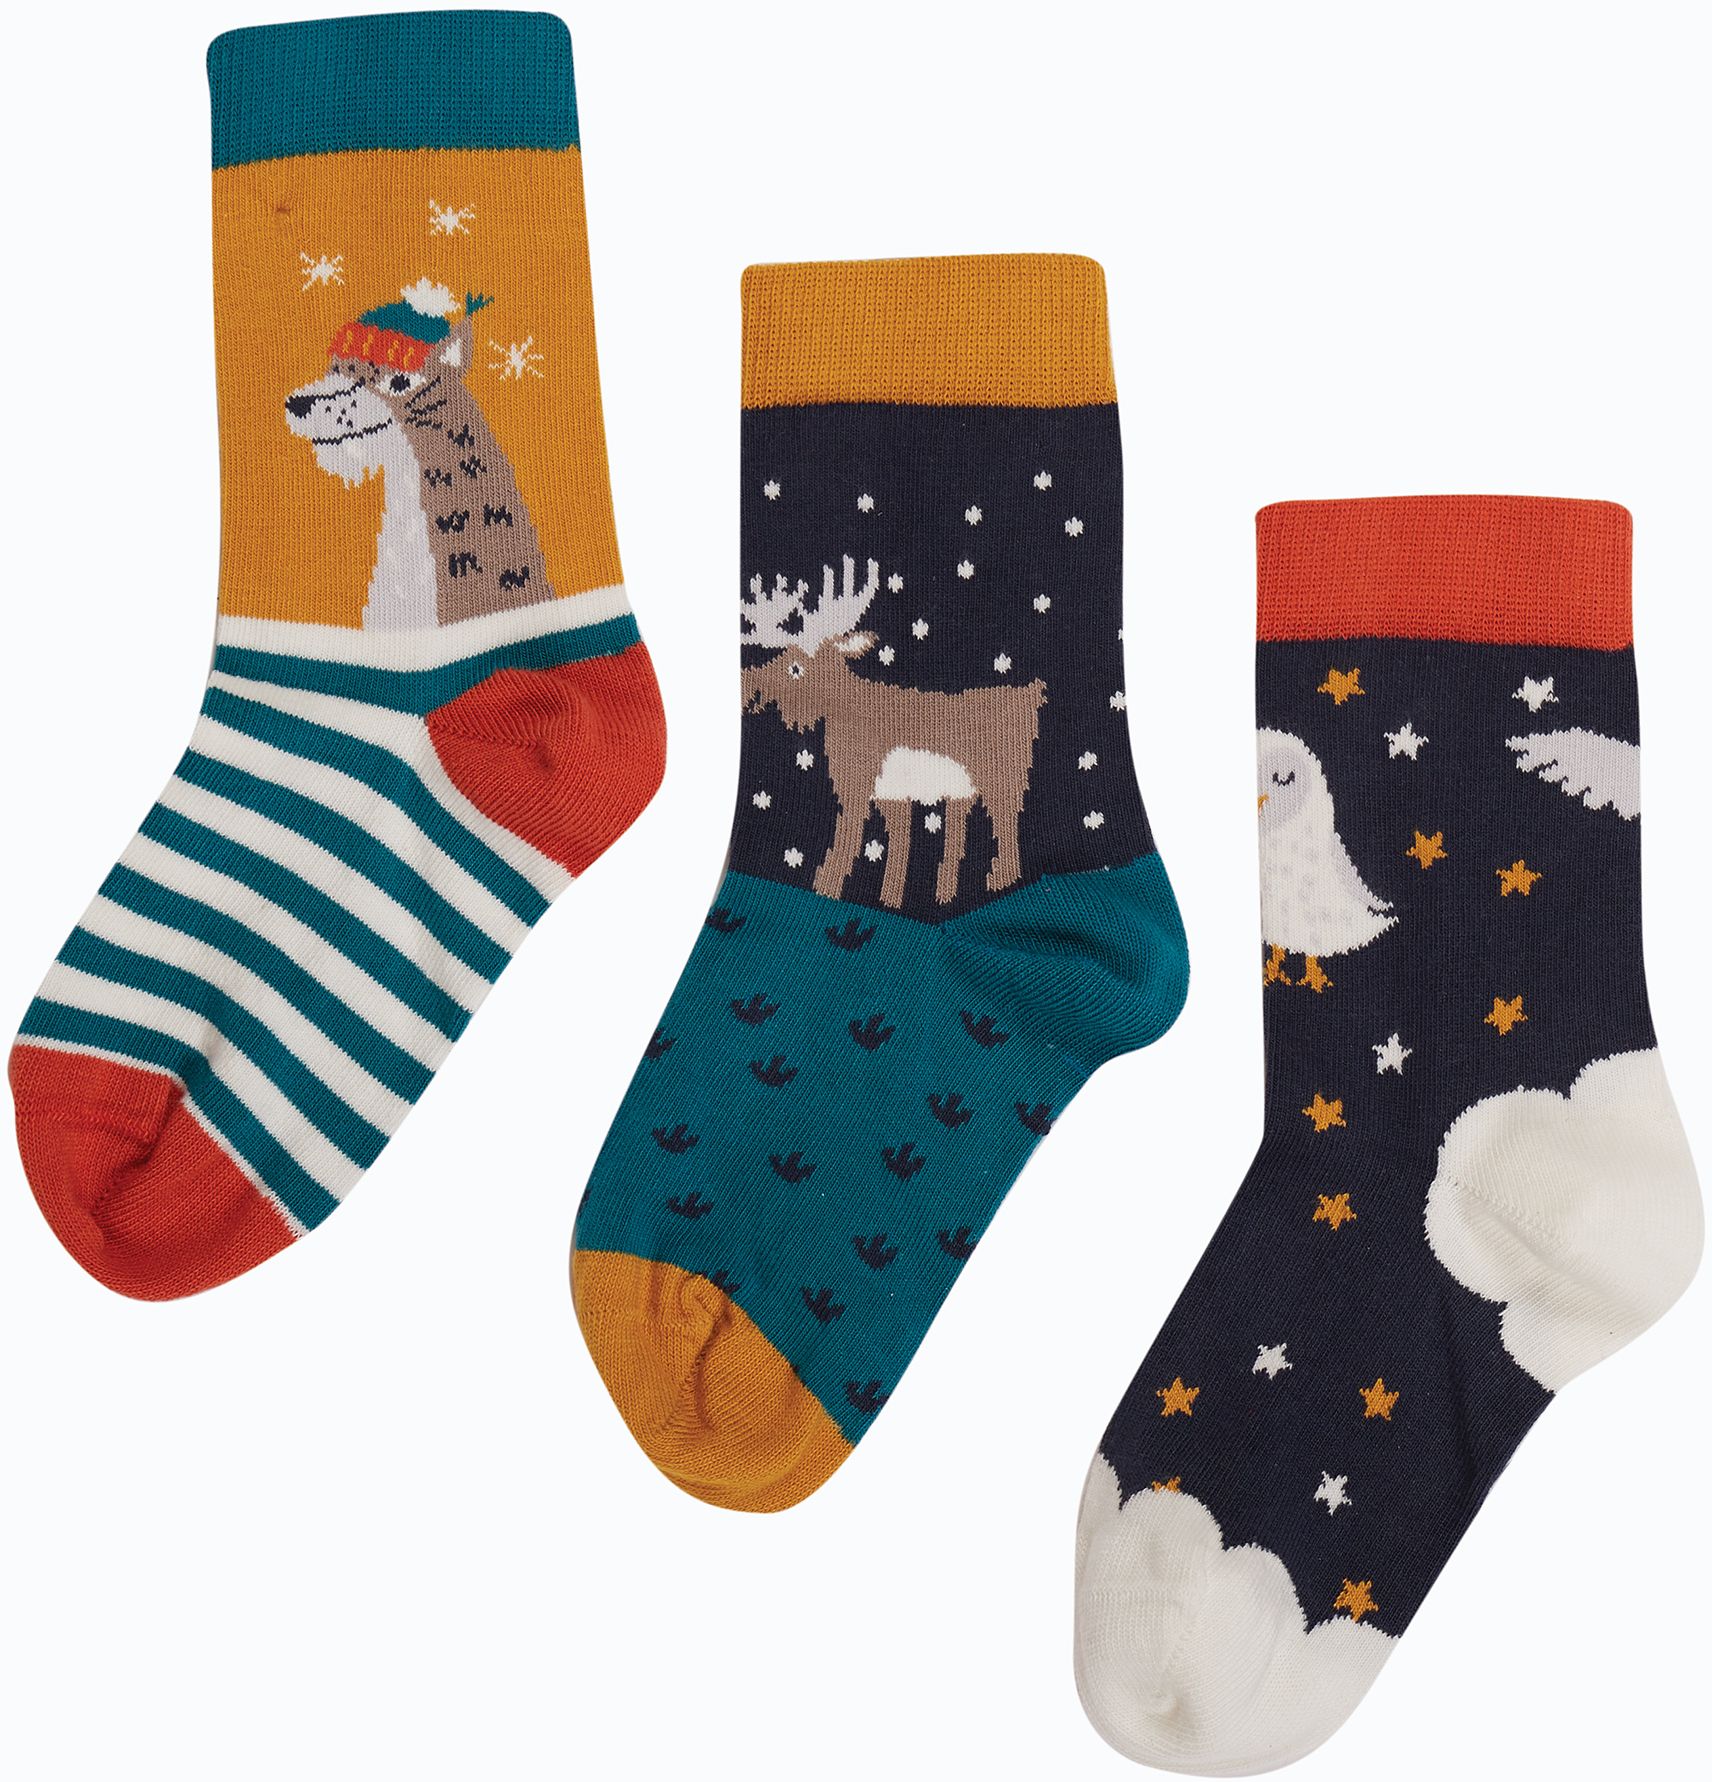 Kinder-Socken im 3er-Pack mit winterlichen Motiven